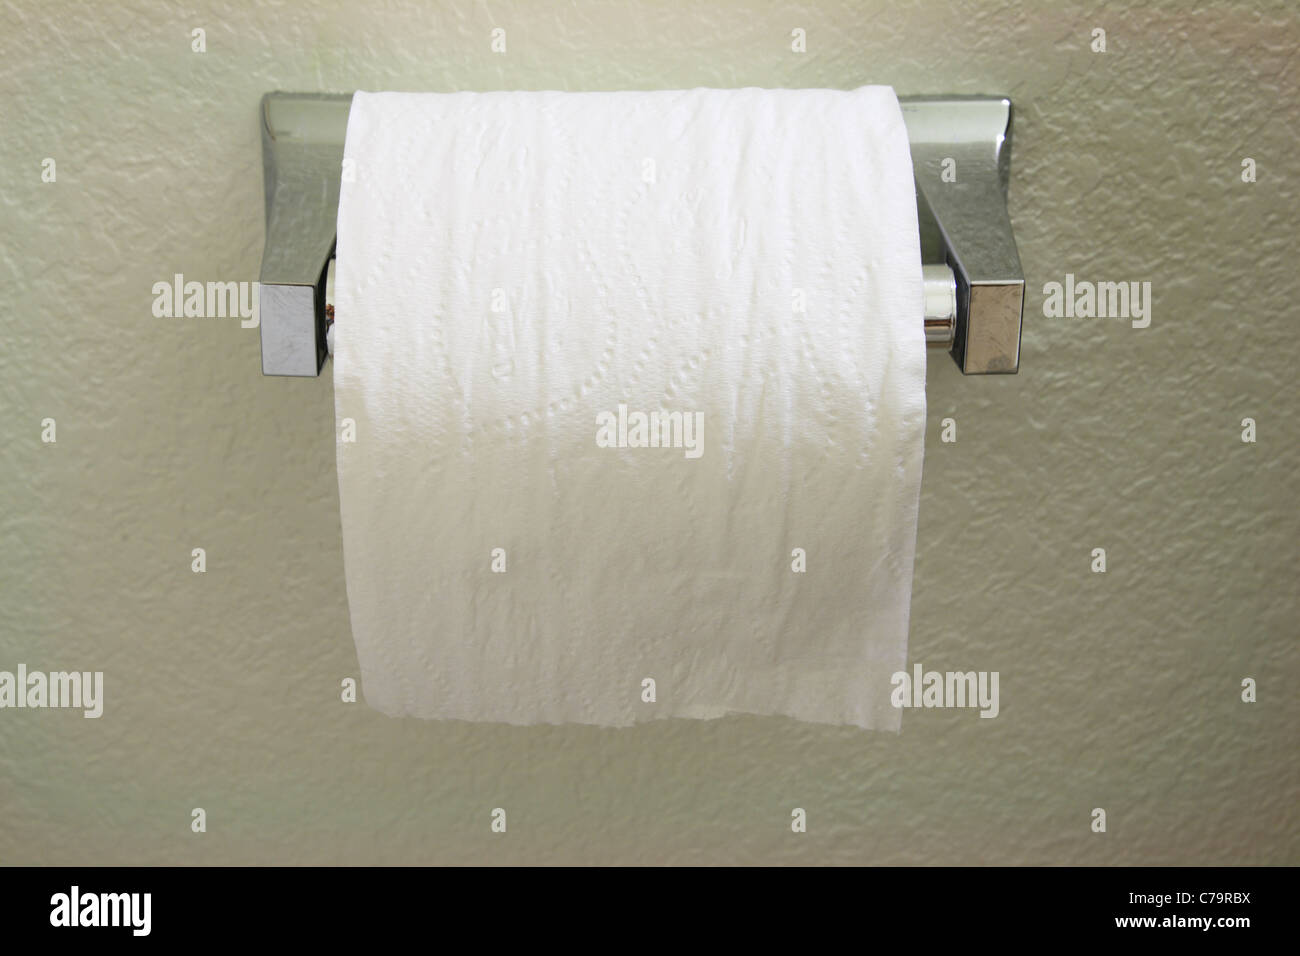 ein WC-Papier Rollen Spender mit der Papierzufuhr über die Spitze nach vorne Stockfoto